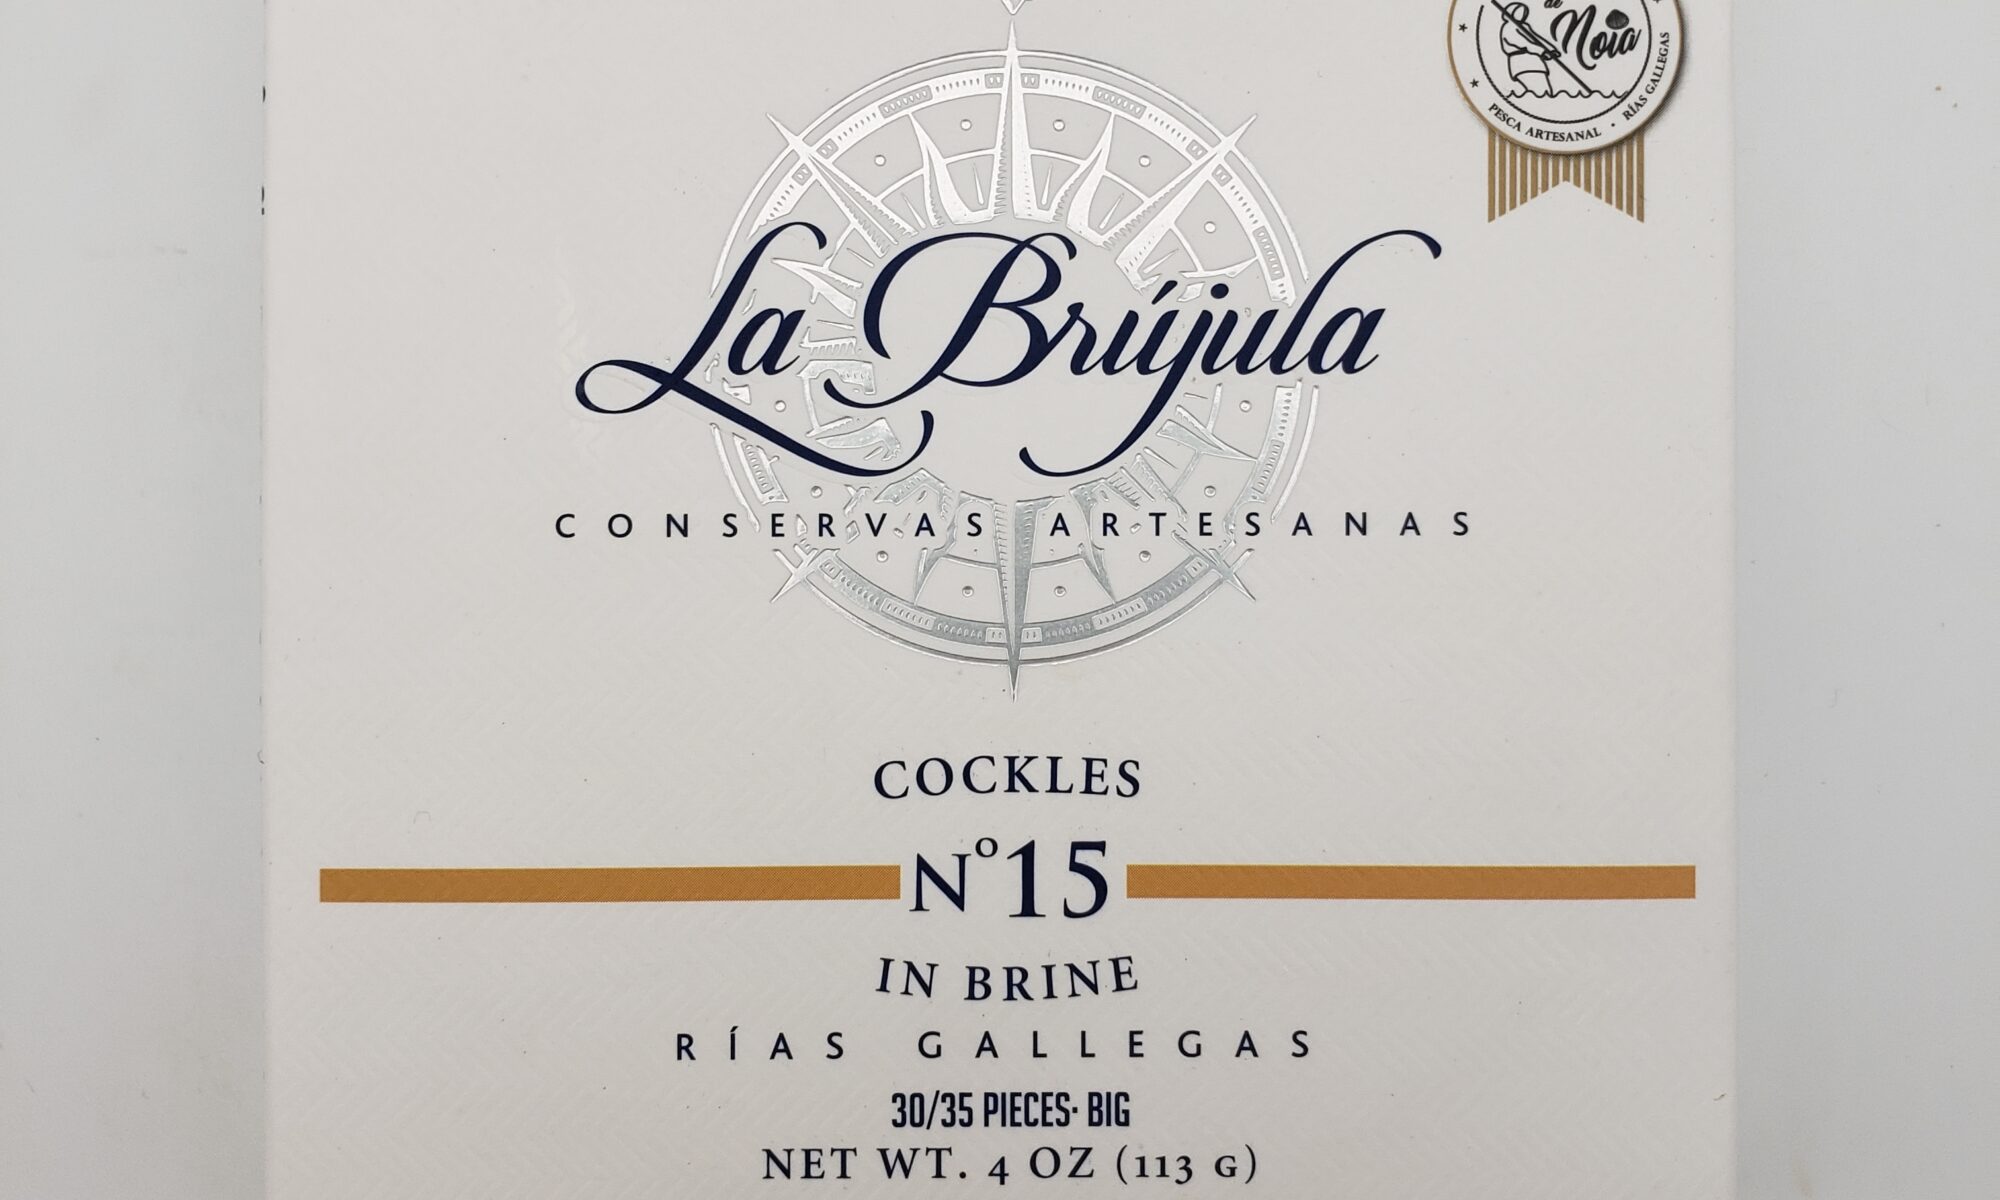 Image of la brujula cockles no 15